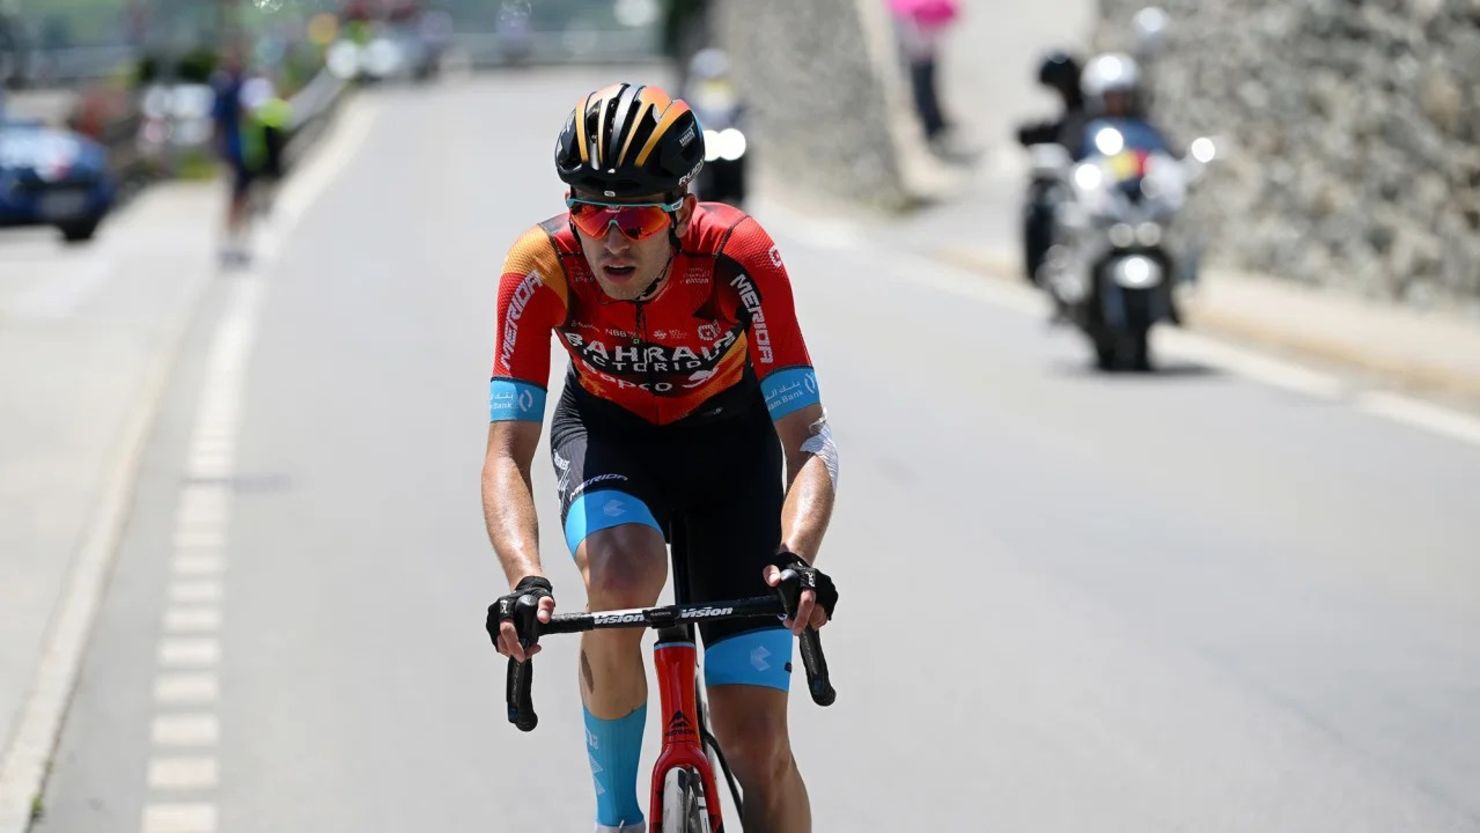 En la foto, Mäder compitiendo en la cuarta etapa del Tour de Suiza esta semana. Crédito: Dario Belingheri/Velo/Getty Images